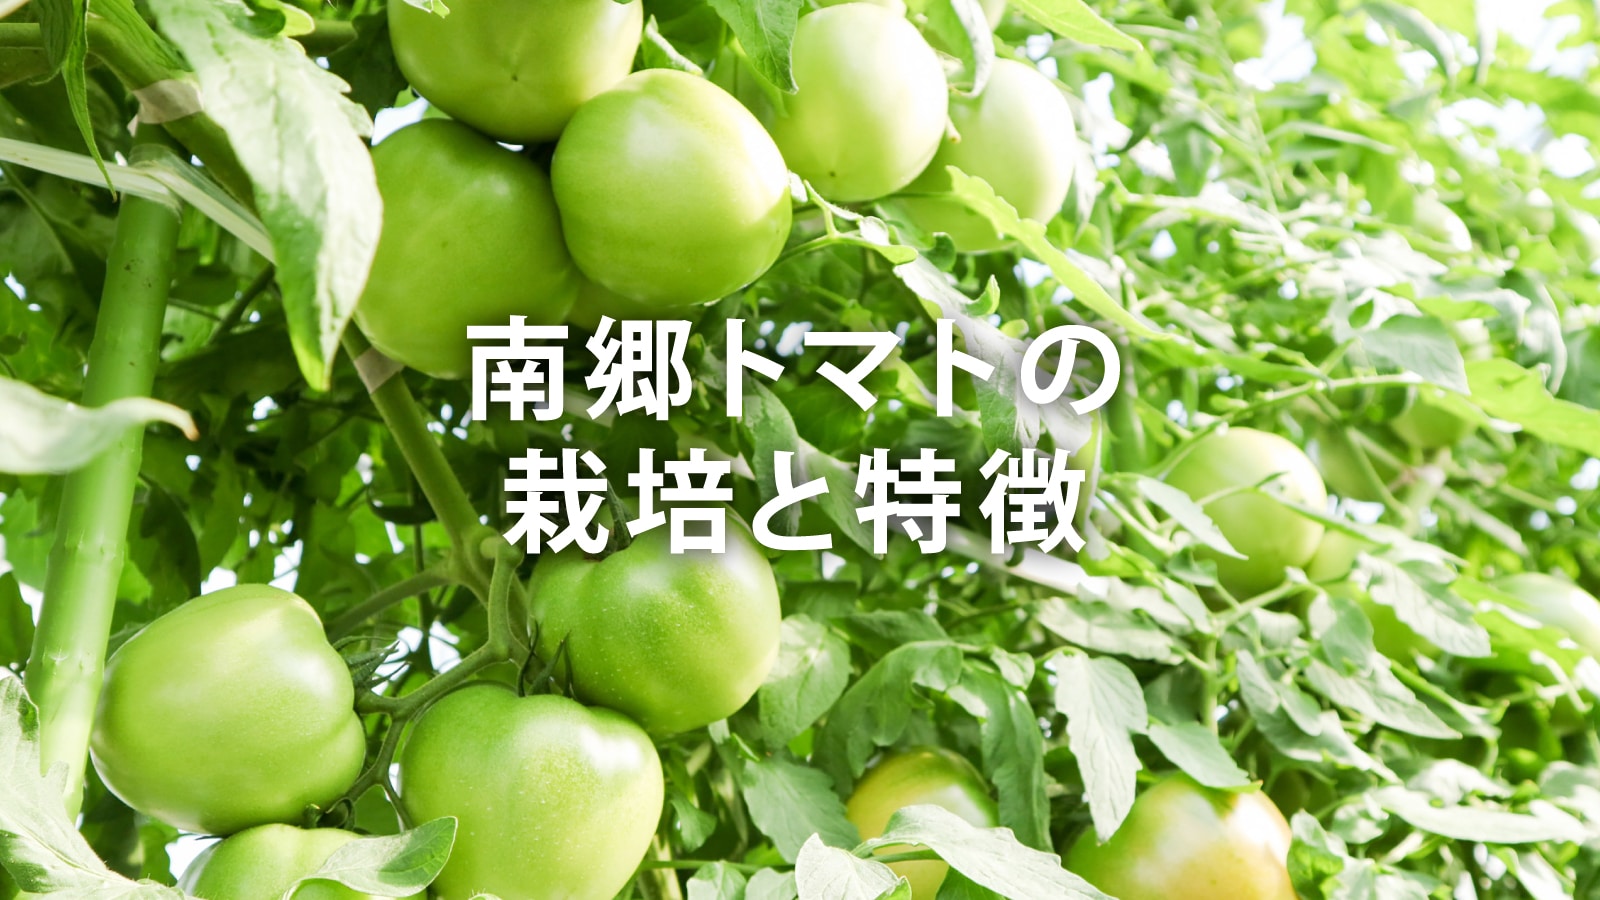 /w4/engeijin/南郷トマトの栽培と特徴